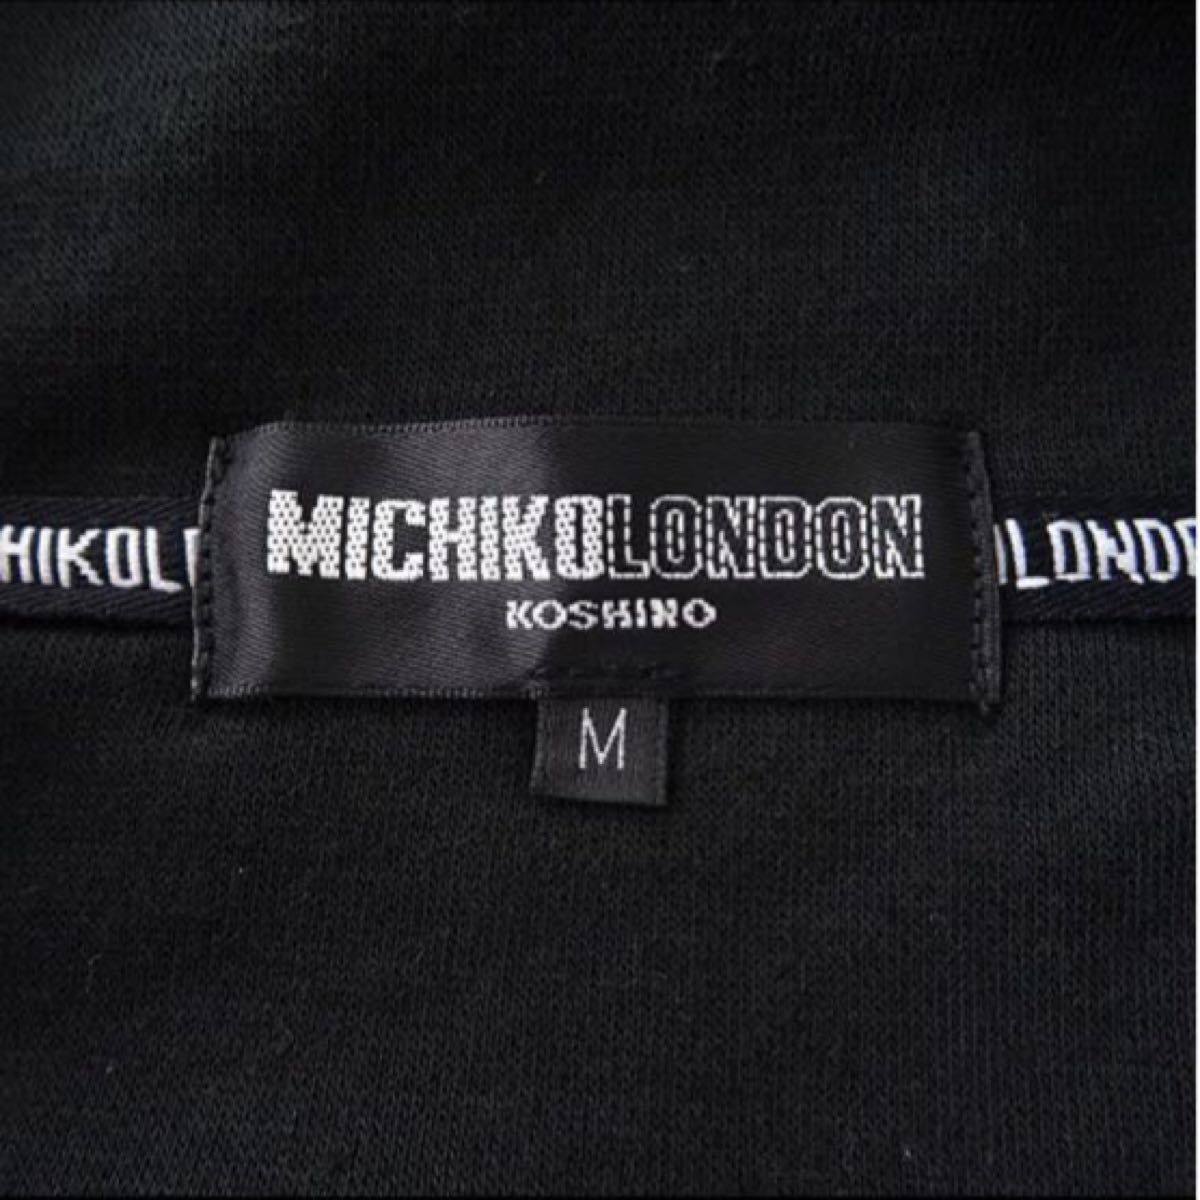 新品【MICHIKO LONDON】ミチコロンドン裏起毛ハーフジップストレッチトレーナーL(ブラック)スウェットメンズ裏暖